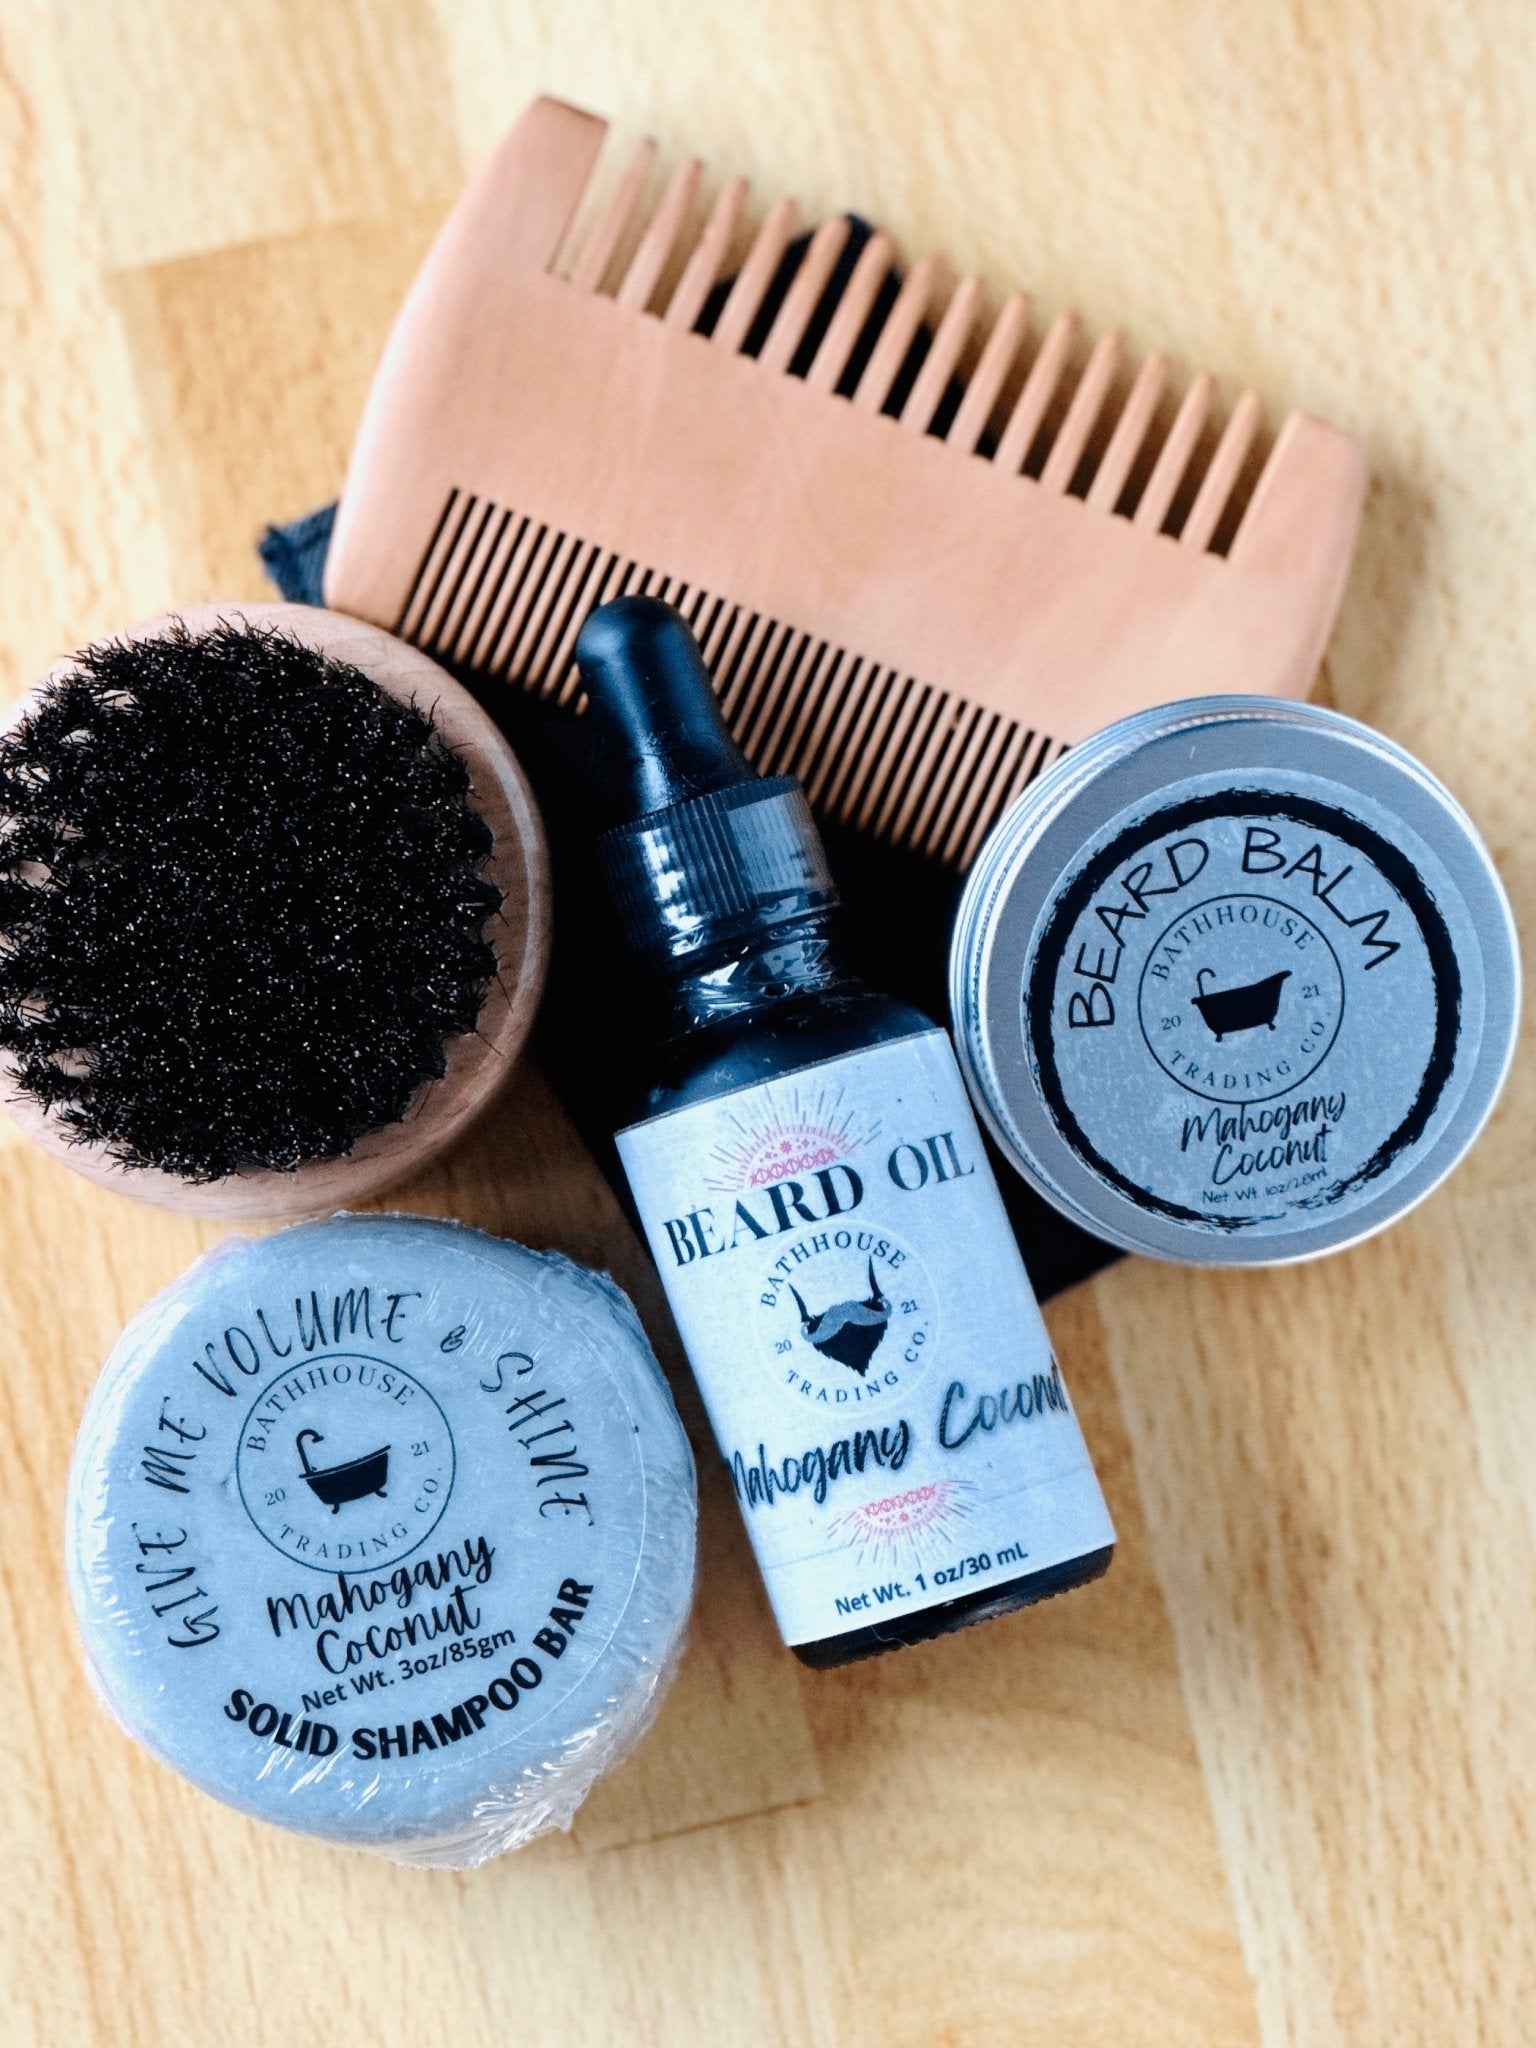 Beard &amp; Hair Care Kit Mahogany Coconut - Bathhouse Trading Company